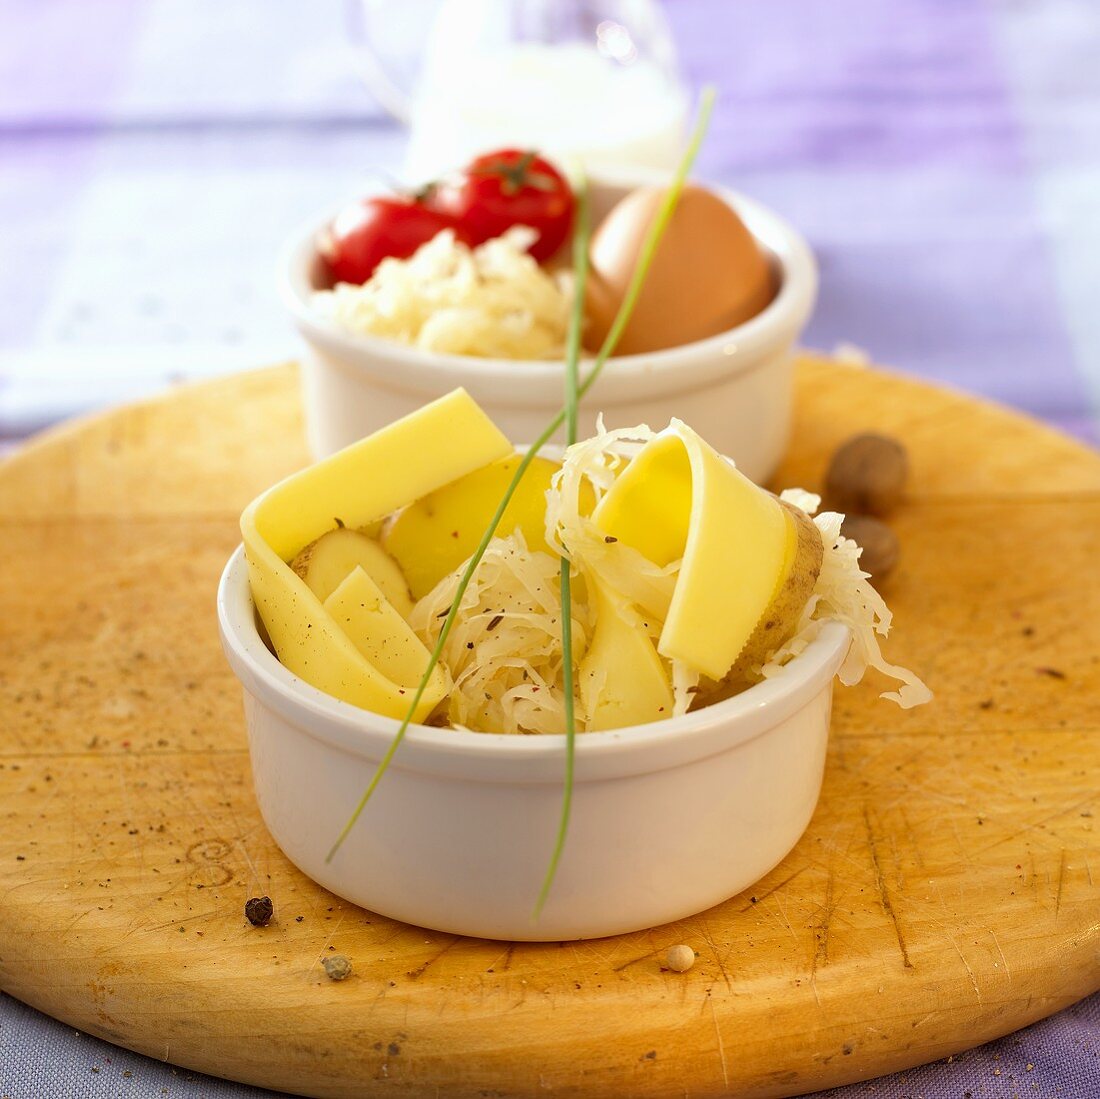 Zutaten: Sauerkraut, Kartoffeln, Käse, Ei, Milch, Tomaten